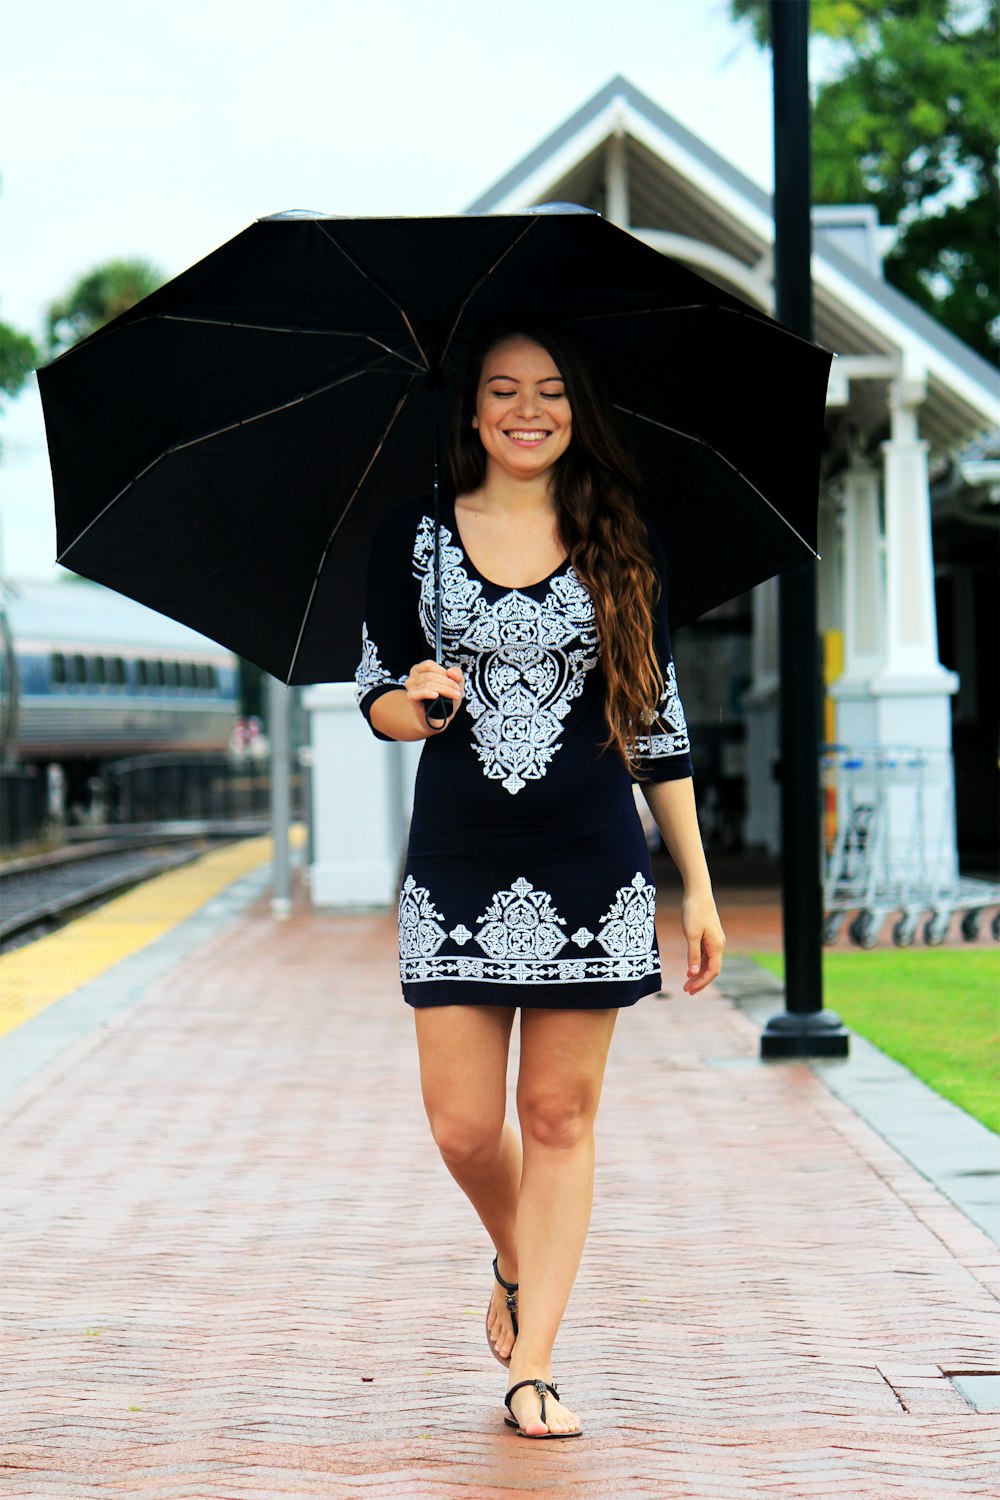 Frau geht auf braunem Weg und hält einen schwarzen Regenschirm in der Hand